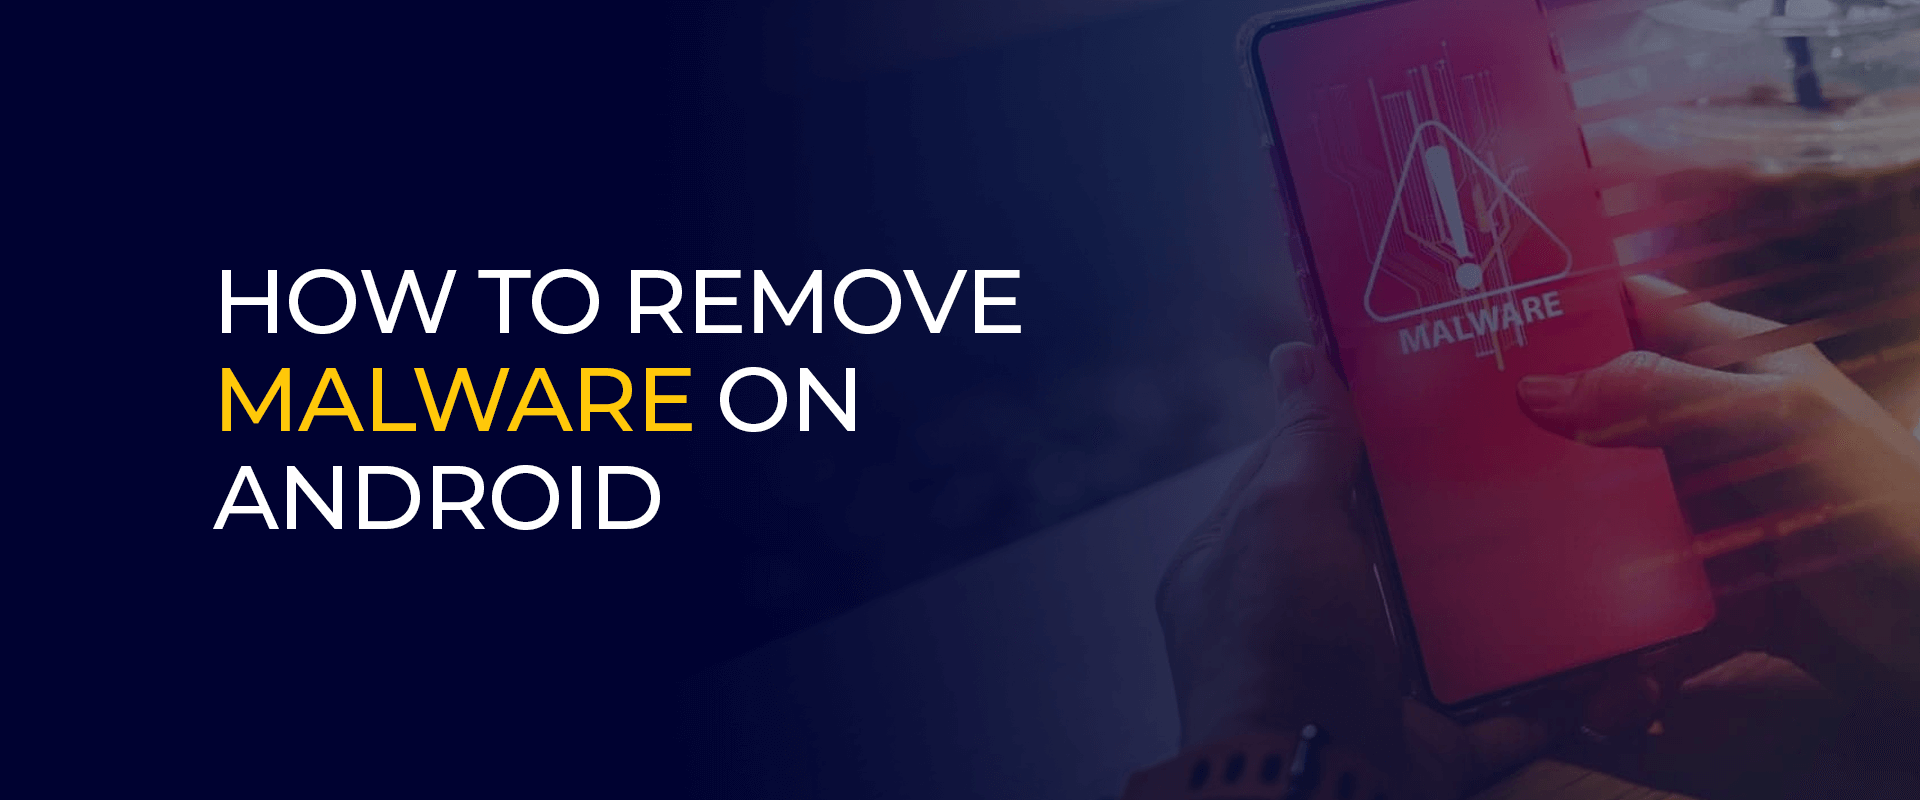 Hoe malware op Android te verwijderen